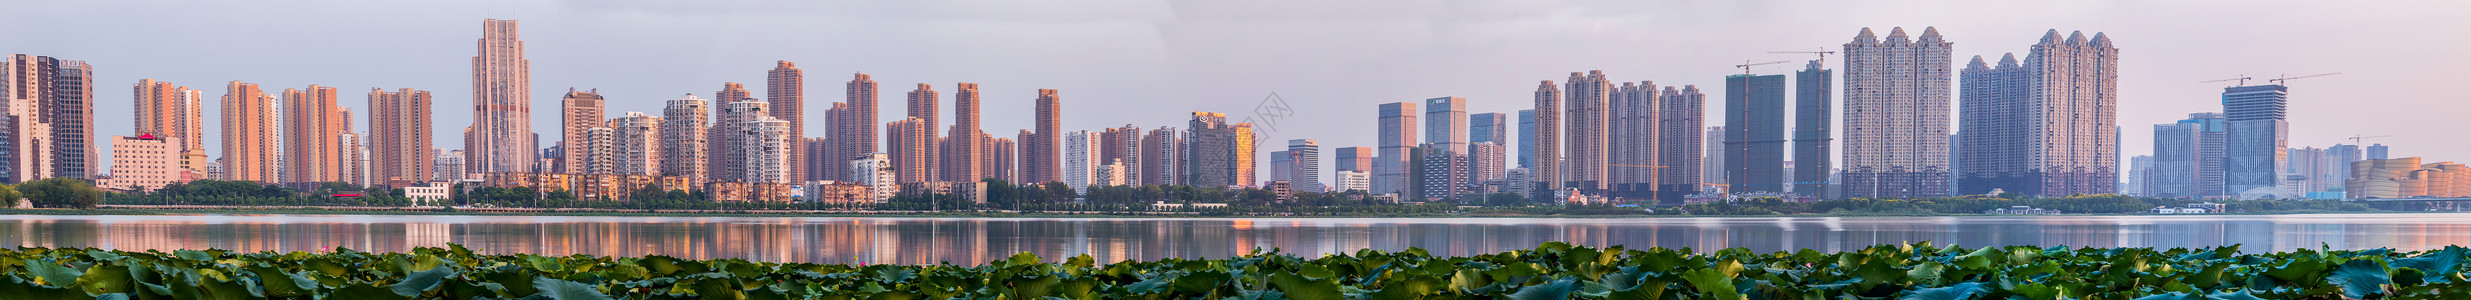 水草荷叶武汉城市建筑全景图背景